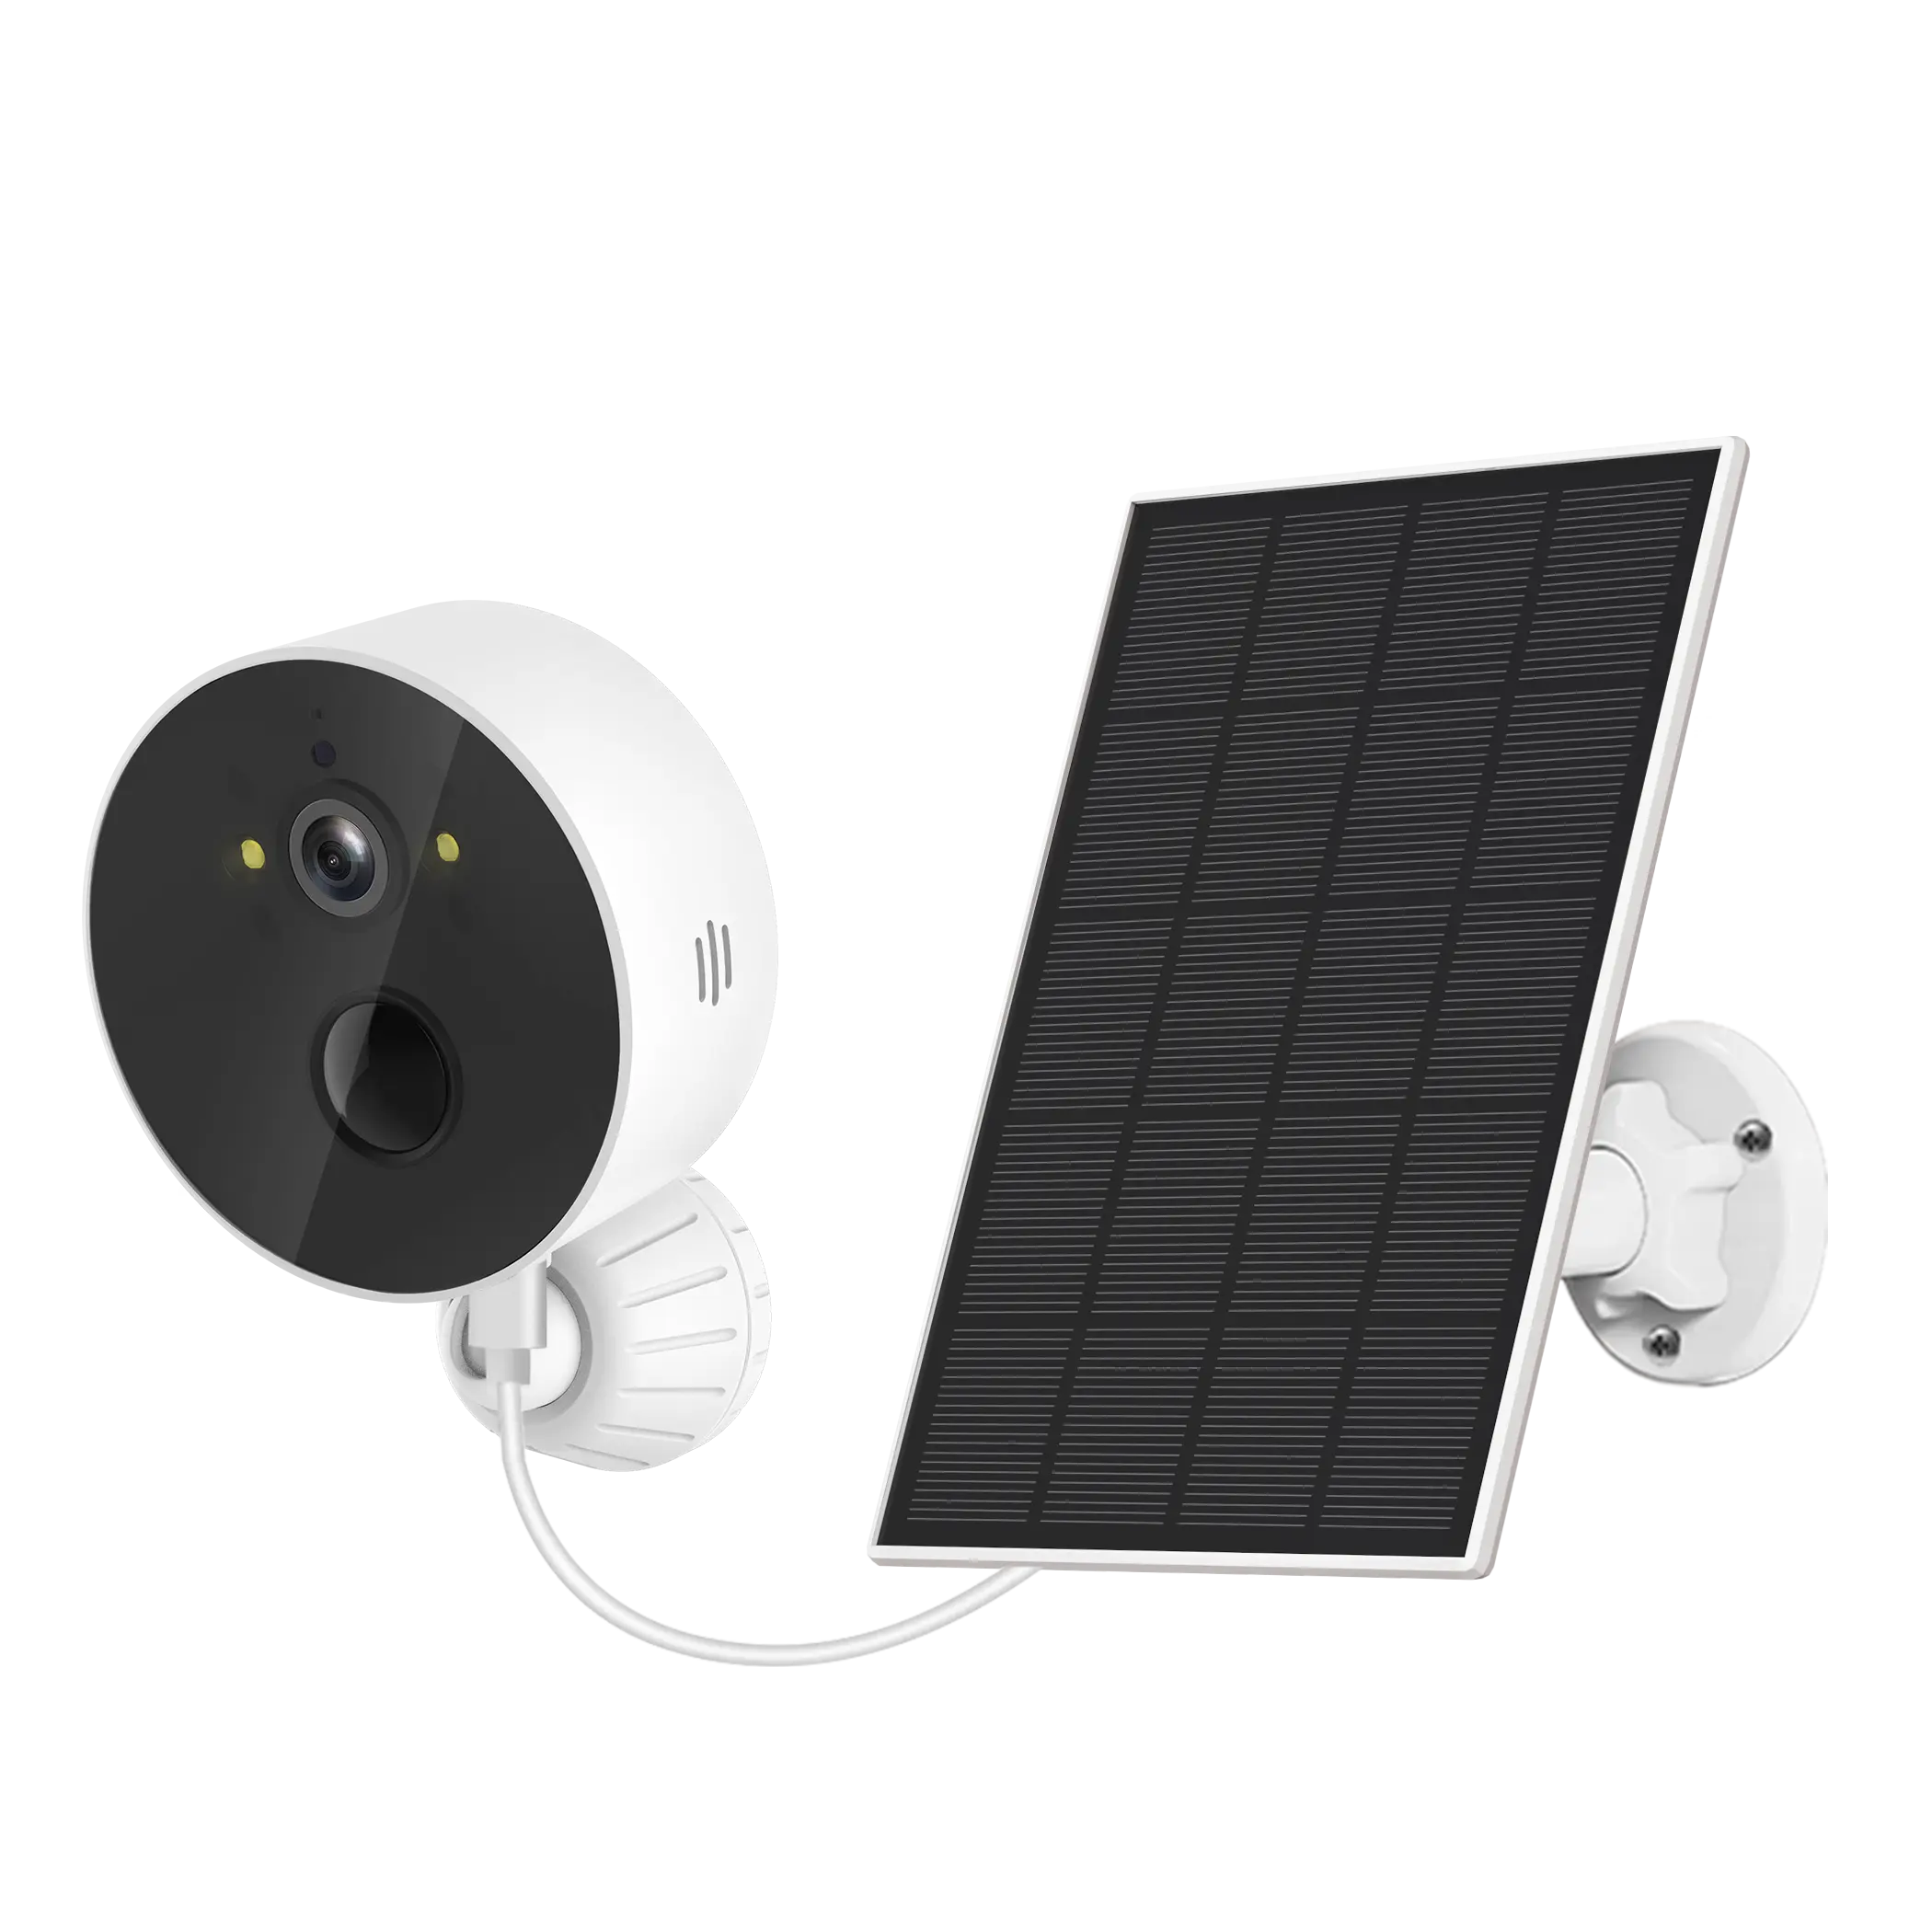 Vision nocturne extérieure et intérieure, caméra wifi ip hd pour animaux de compagnie, sécurité domestique sans fil 360 ptz, système de caméra de vidéosurveillance solaire